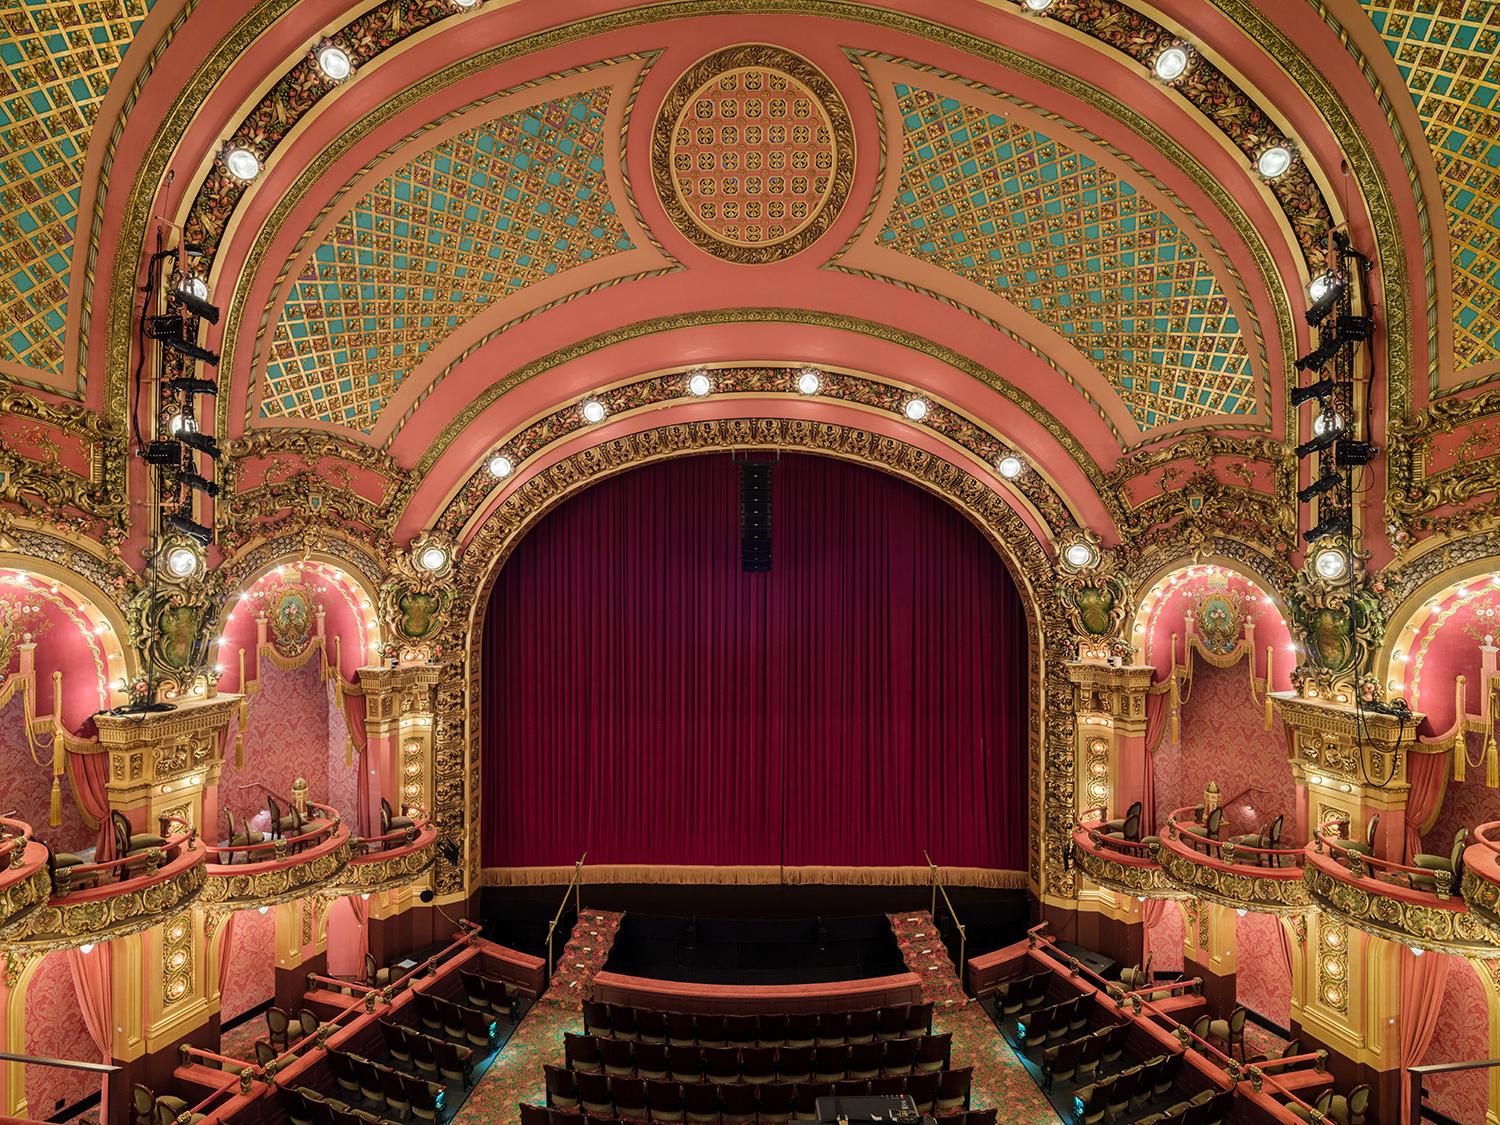 Das Cutler Majestic Theatre ist ein 1903 vom Architekten John Galen Howard erbautes, mit Juwelen verziertes Beaux-Arts-Opernhaus und späteres Varieté-Theater.

Serie: Architektur der vergoldeten Träume
Archiv-Pigment Canson Platine Druck	
Alle